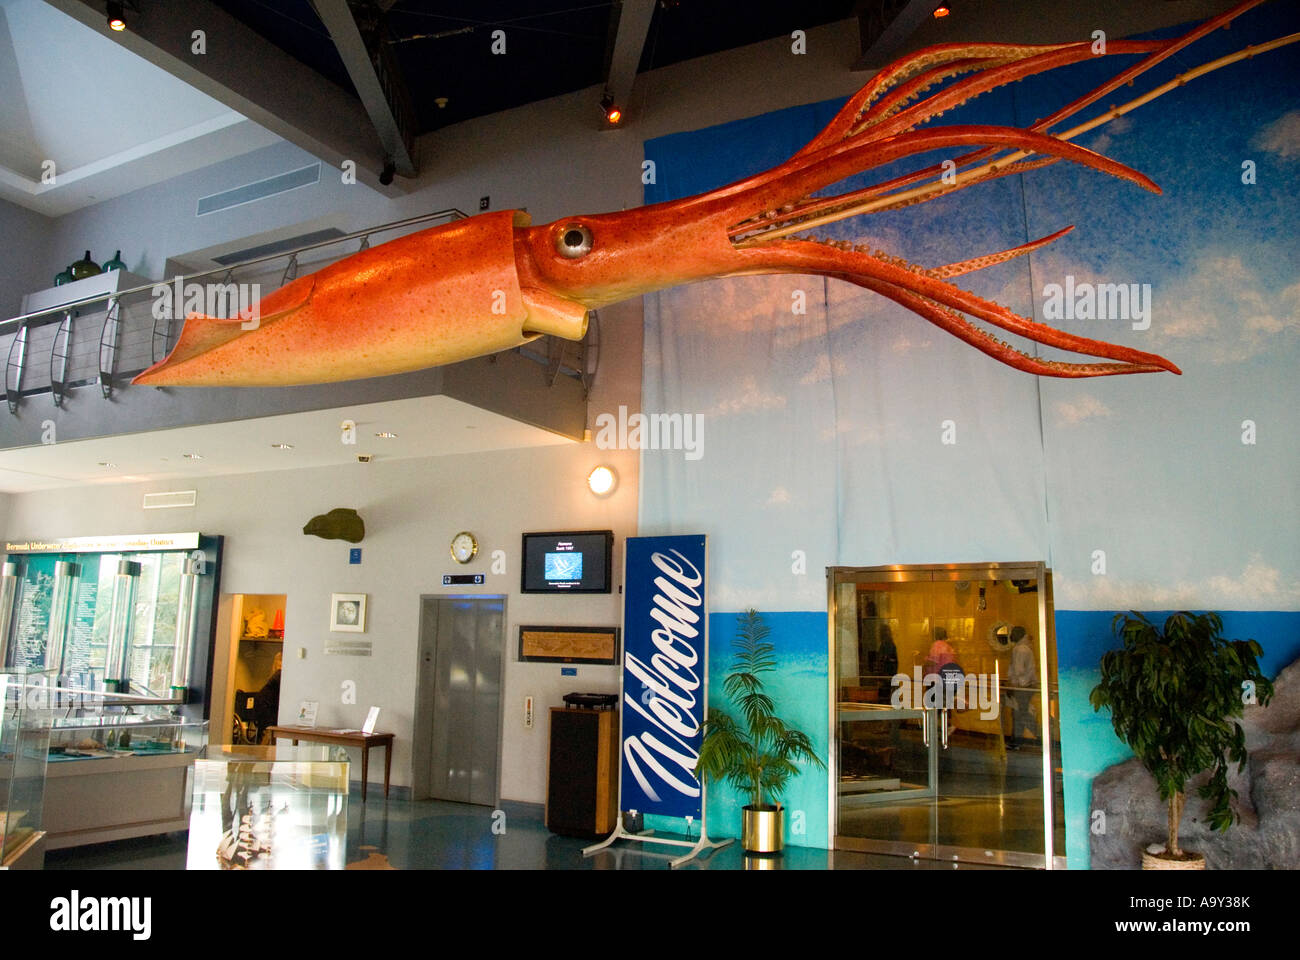 Bermuda Hamilton Bermuda Underwater Exploration Institute giant squid in lobby Stock Photo